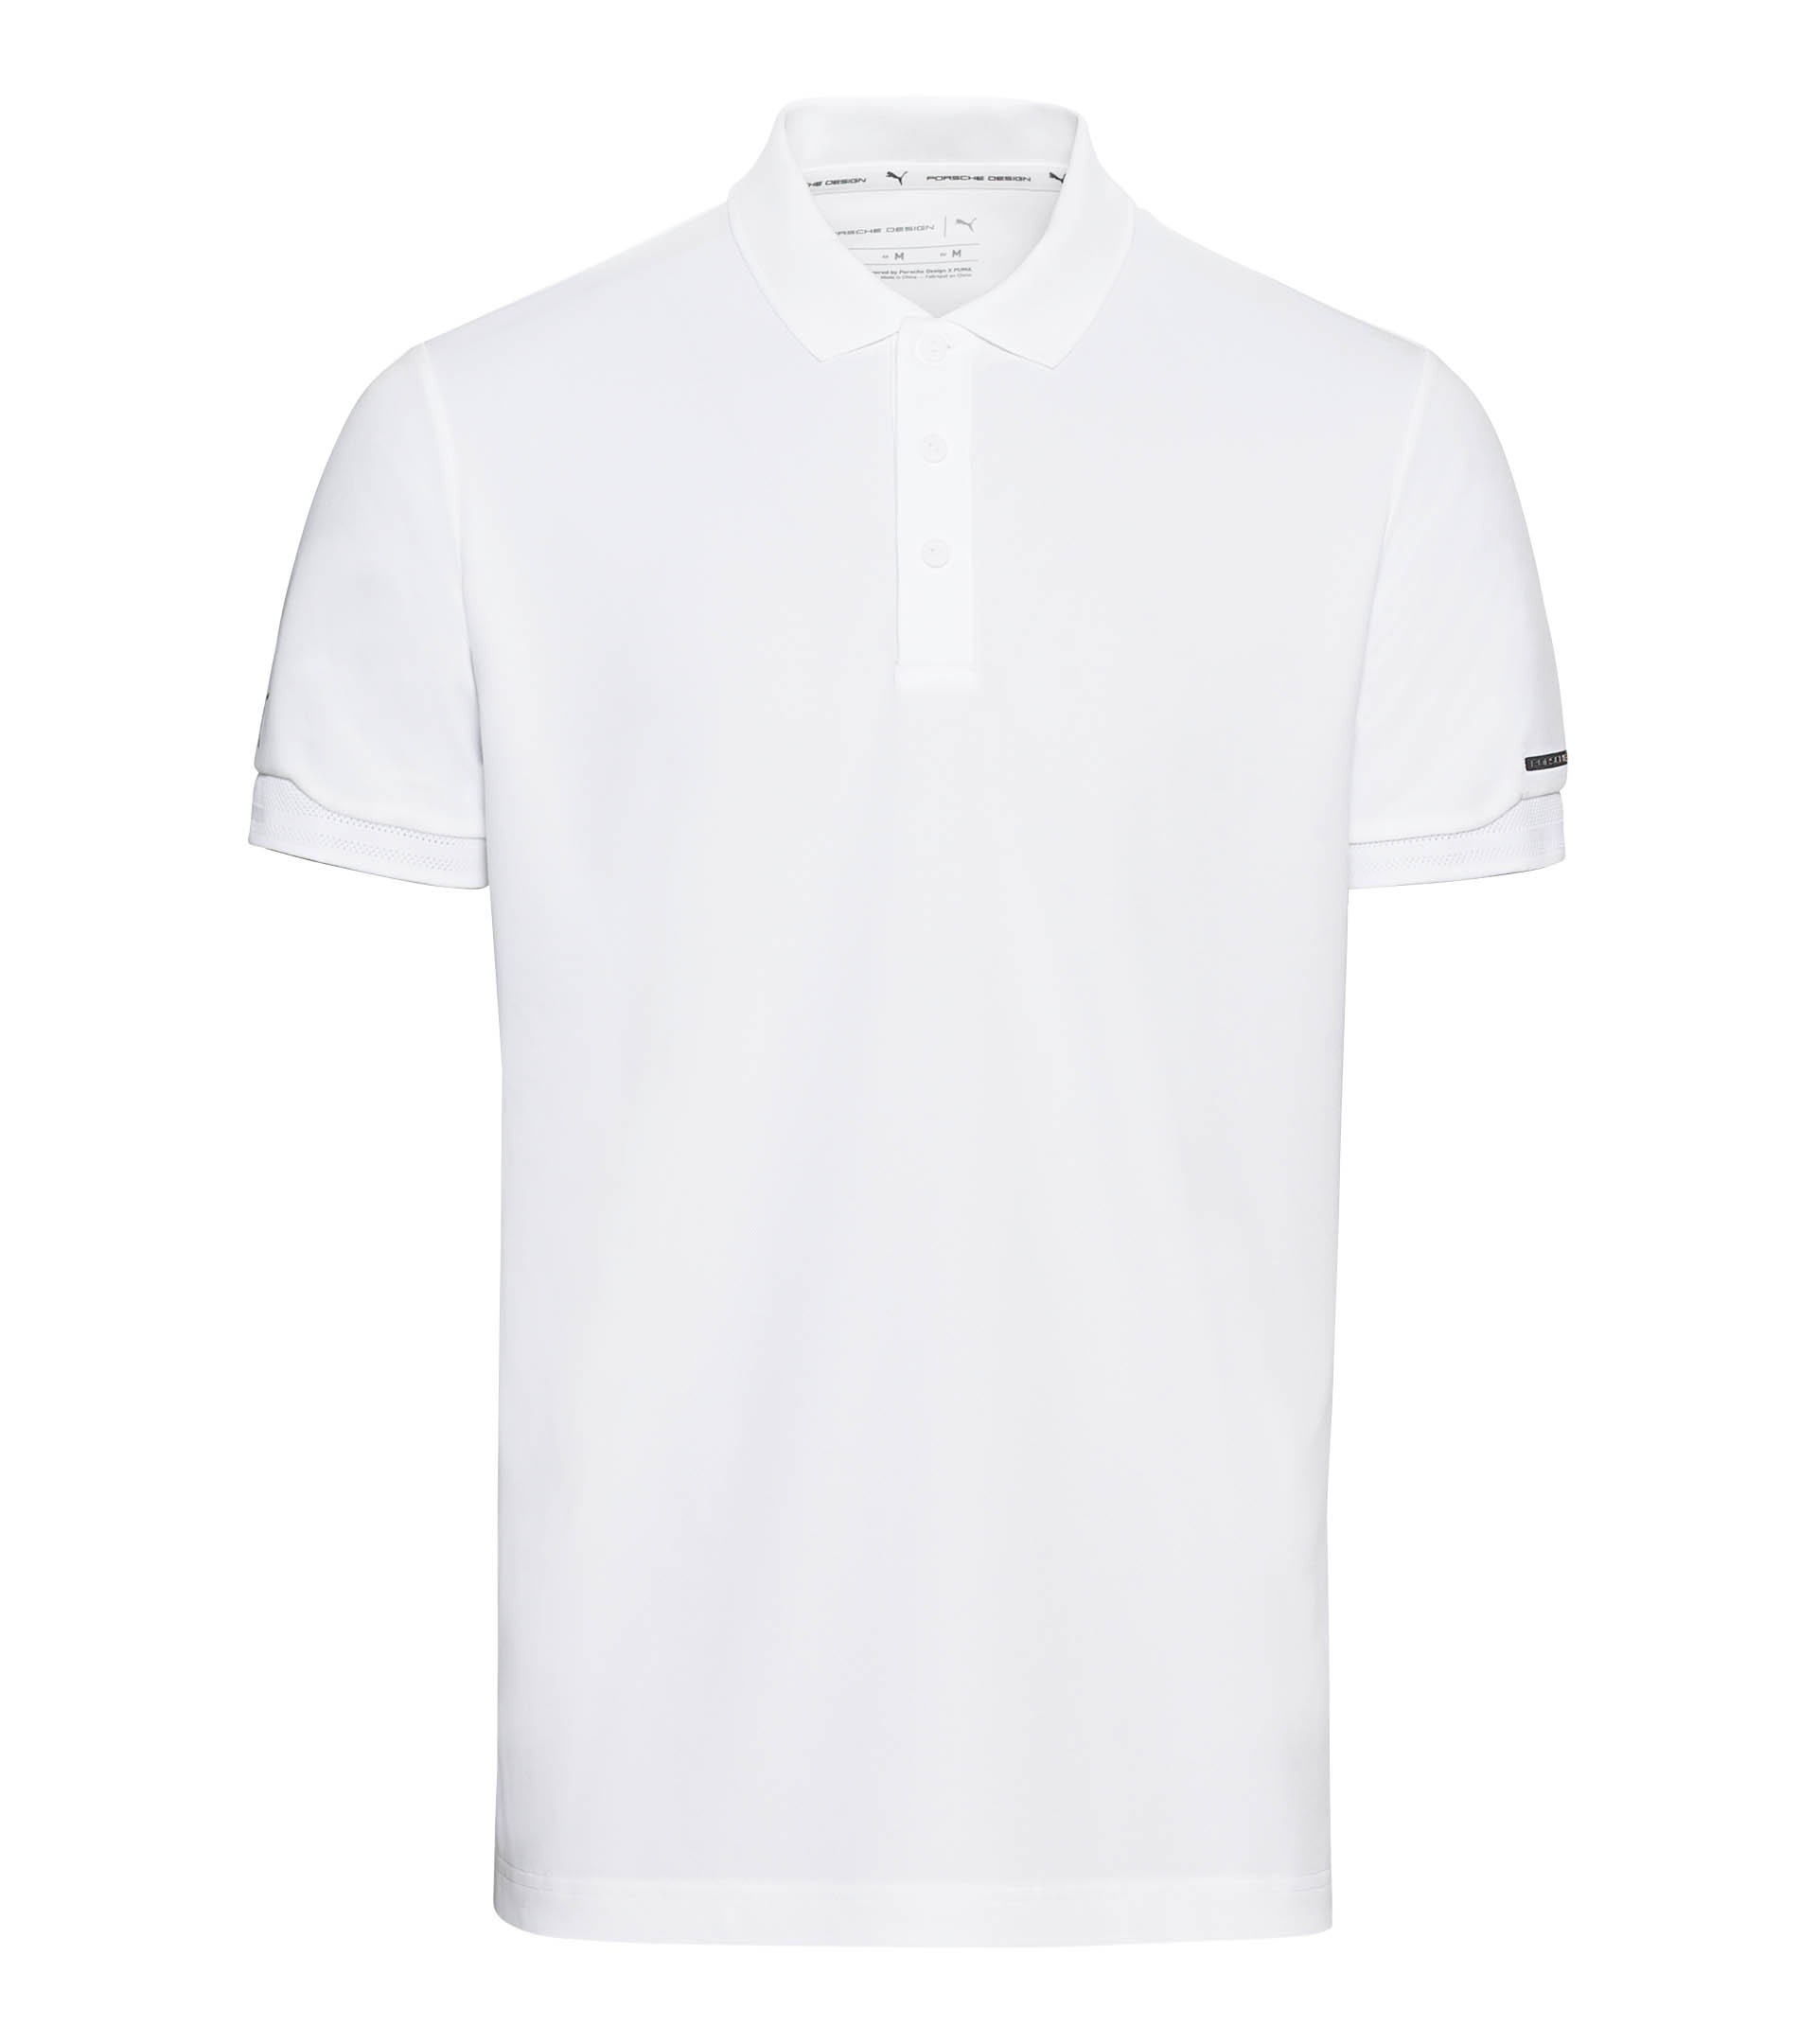 Polo shirt - Exclusive Sports Polo & T-Shirts for Men | Porsche Design ...